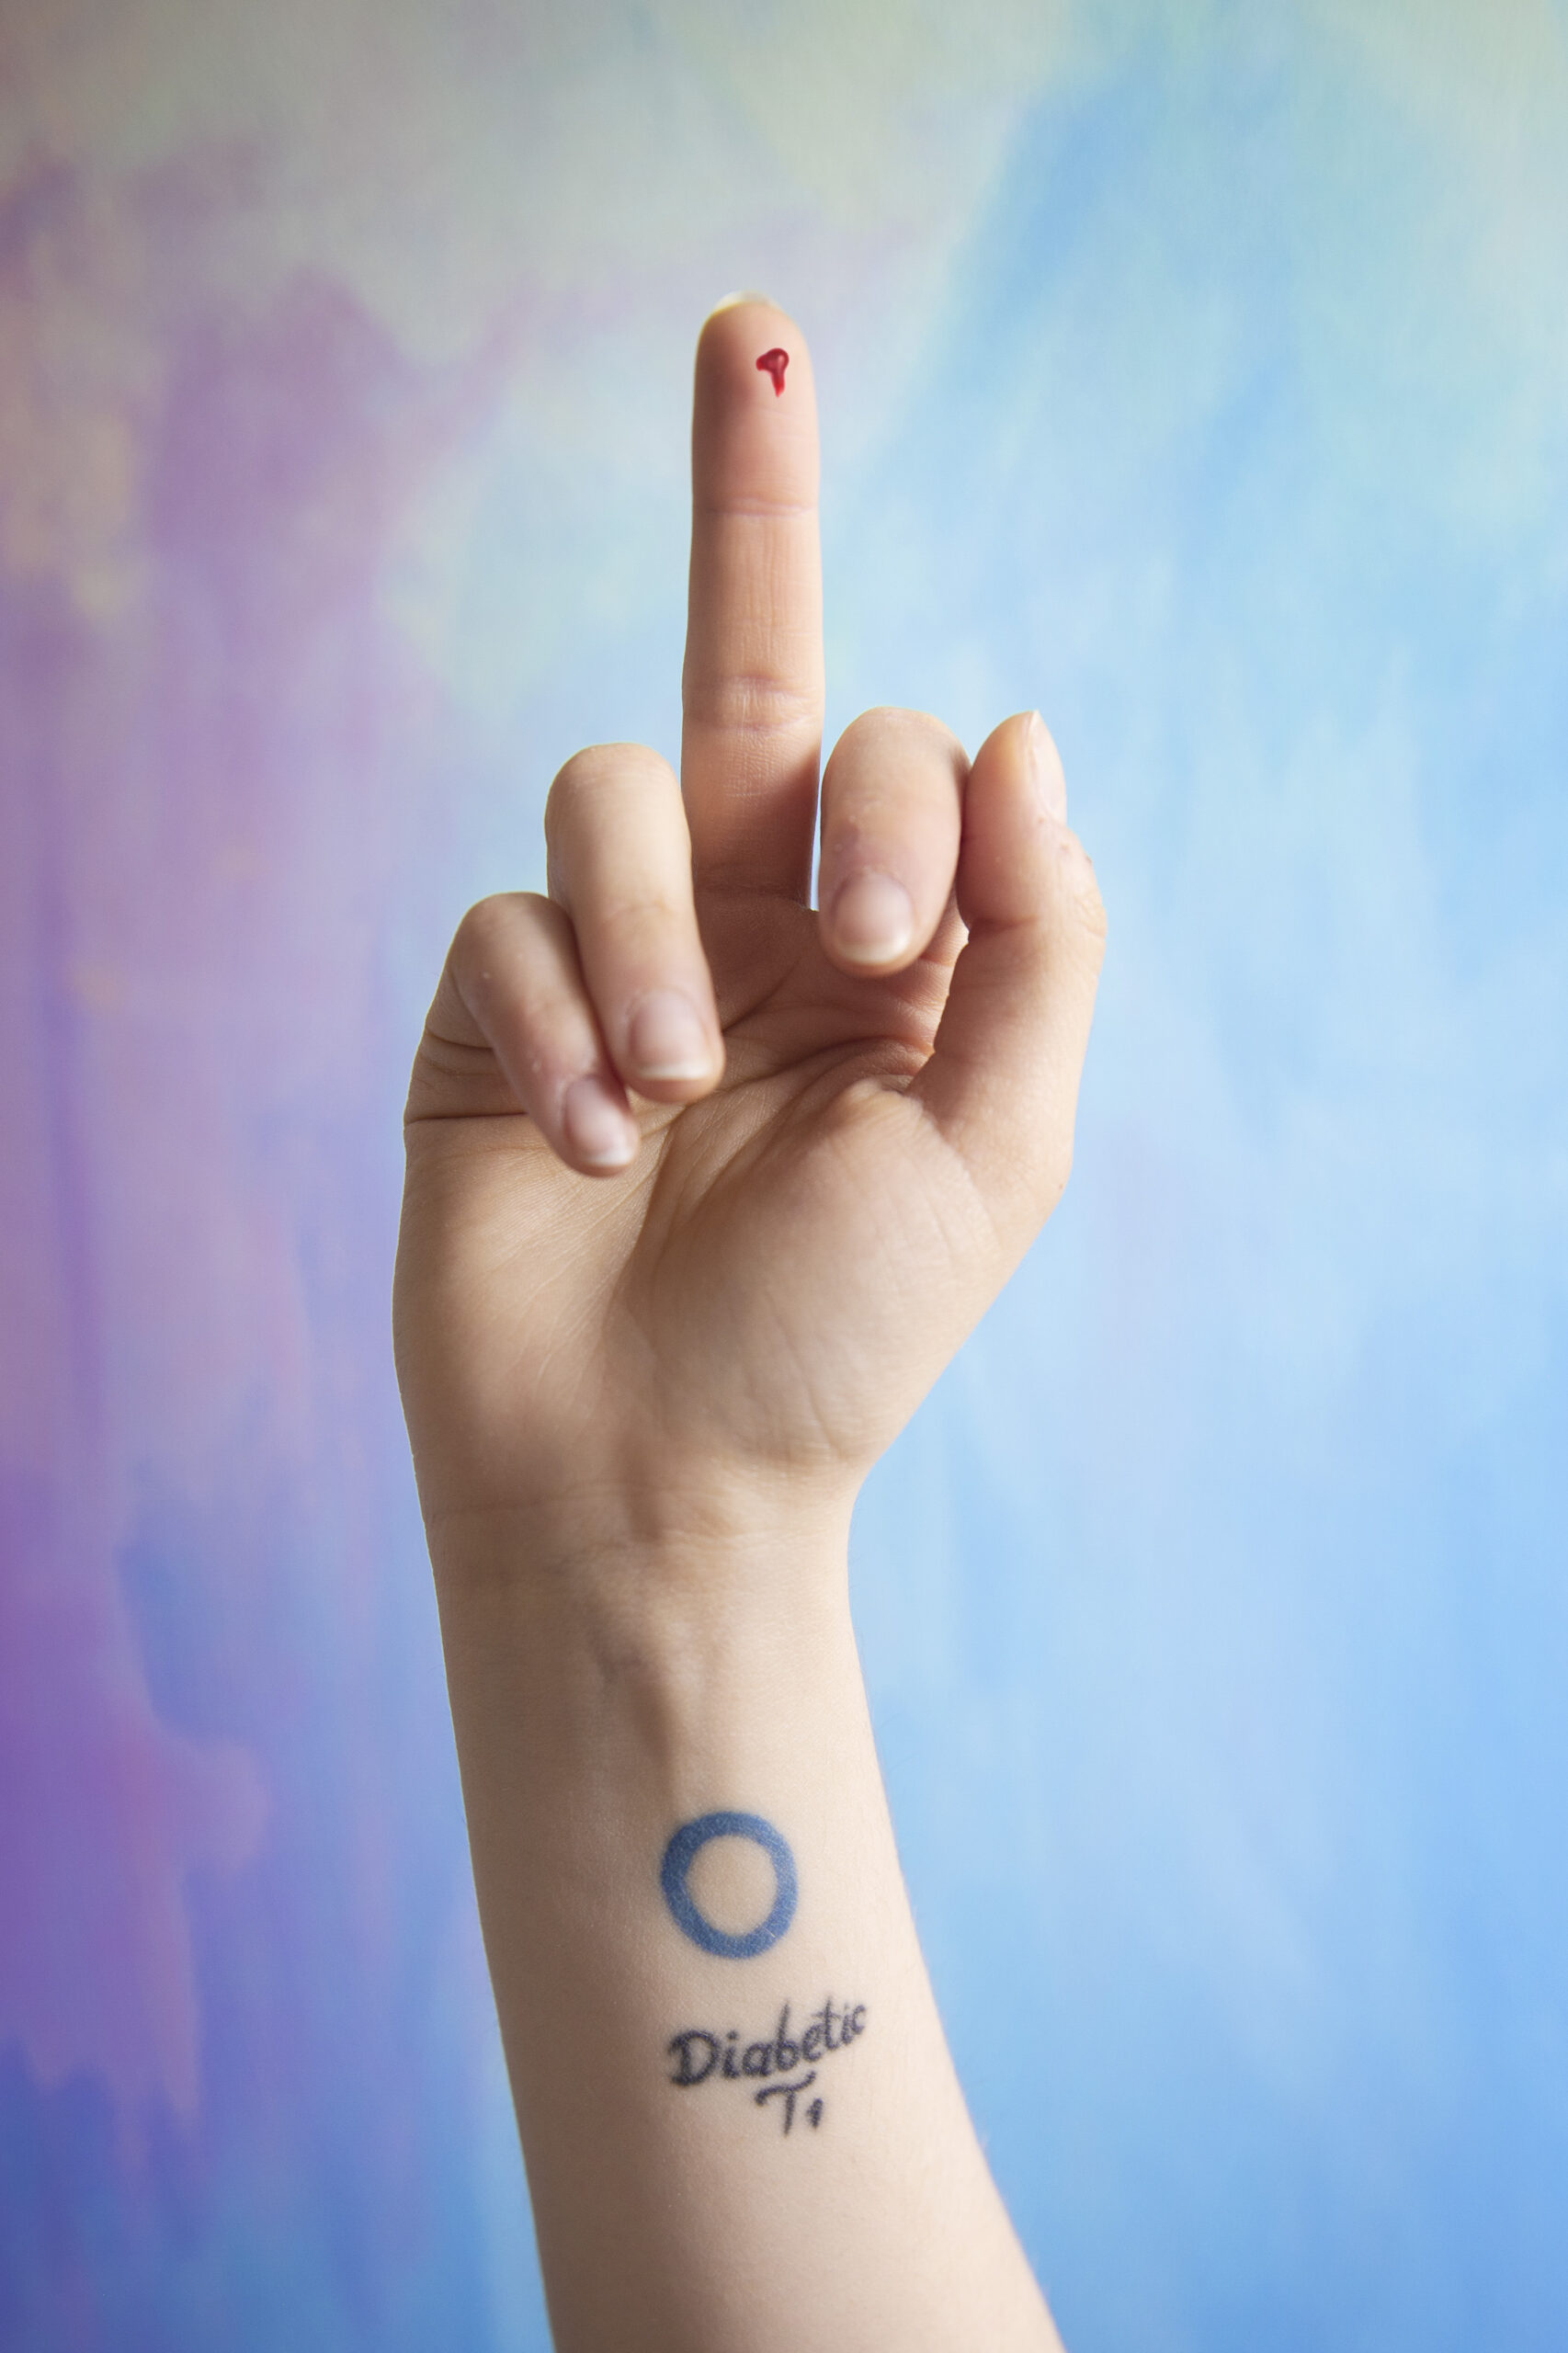 Zdjęcie przedstawia dłoń ukazującą środkowy palec. Na ręce znajduje się tatuaż z napisem cukrzyca po angielsku. Z palca cieknie krew jak przy badaniu poziomu cukru we krwi. Tło zdjęcia jest kolorowe, wesołe i kontrastuje z wymownym, wulgarnym znakiem środkowego palca.